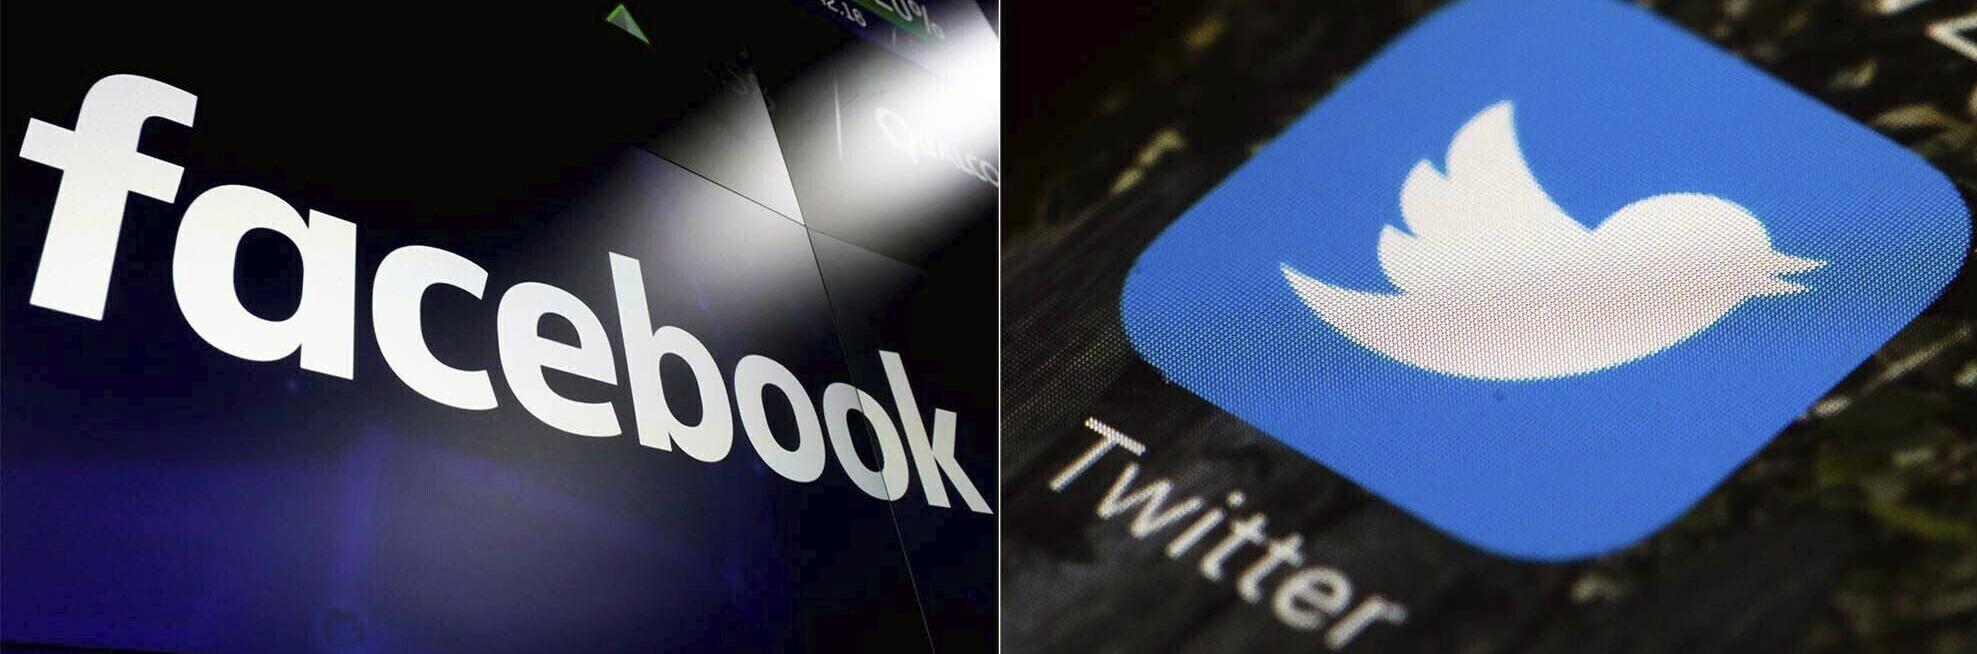 El tribunal falla a favor de la ley de Texas sobre la regulación de las redes sociales